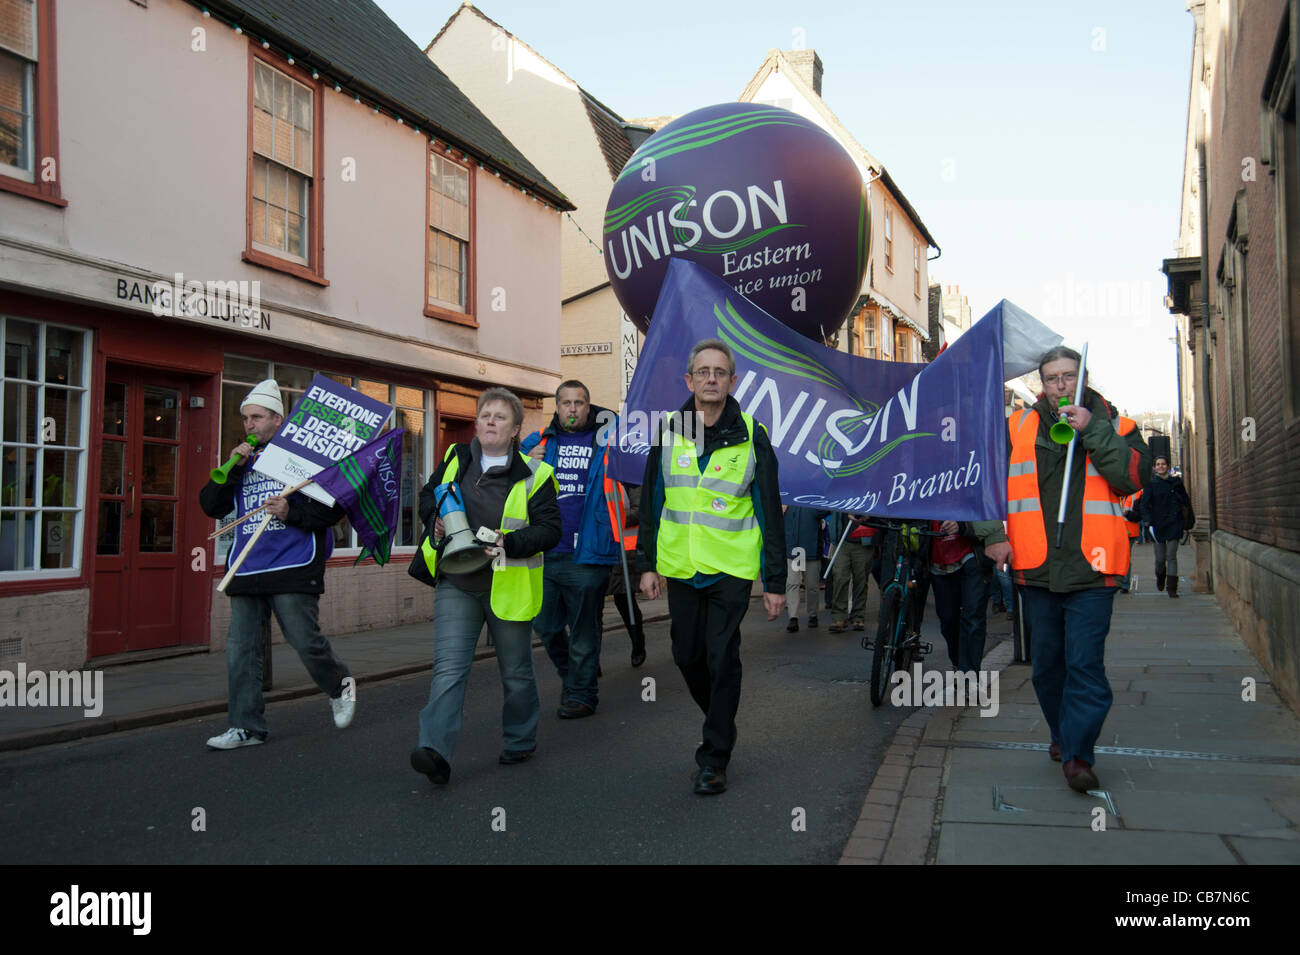 Manifestations à Cambridge dans le 30 novembre 2011 grève du secteur public sur les retraites Banque D'Images